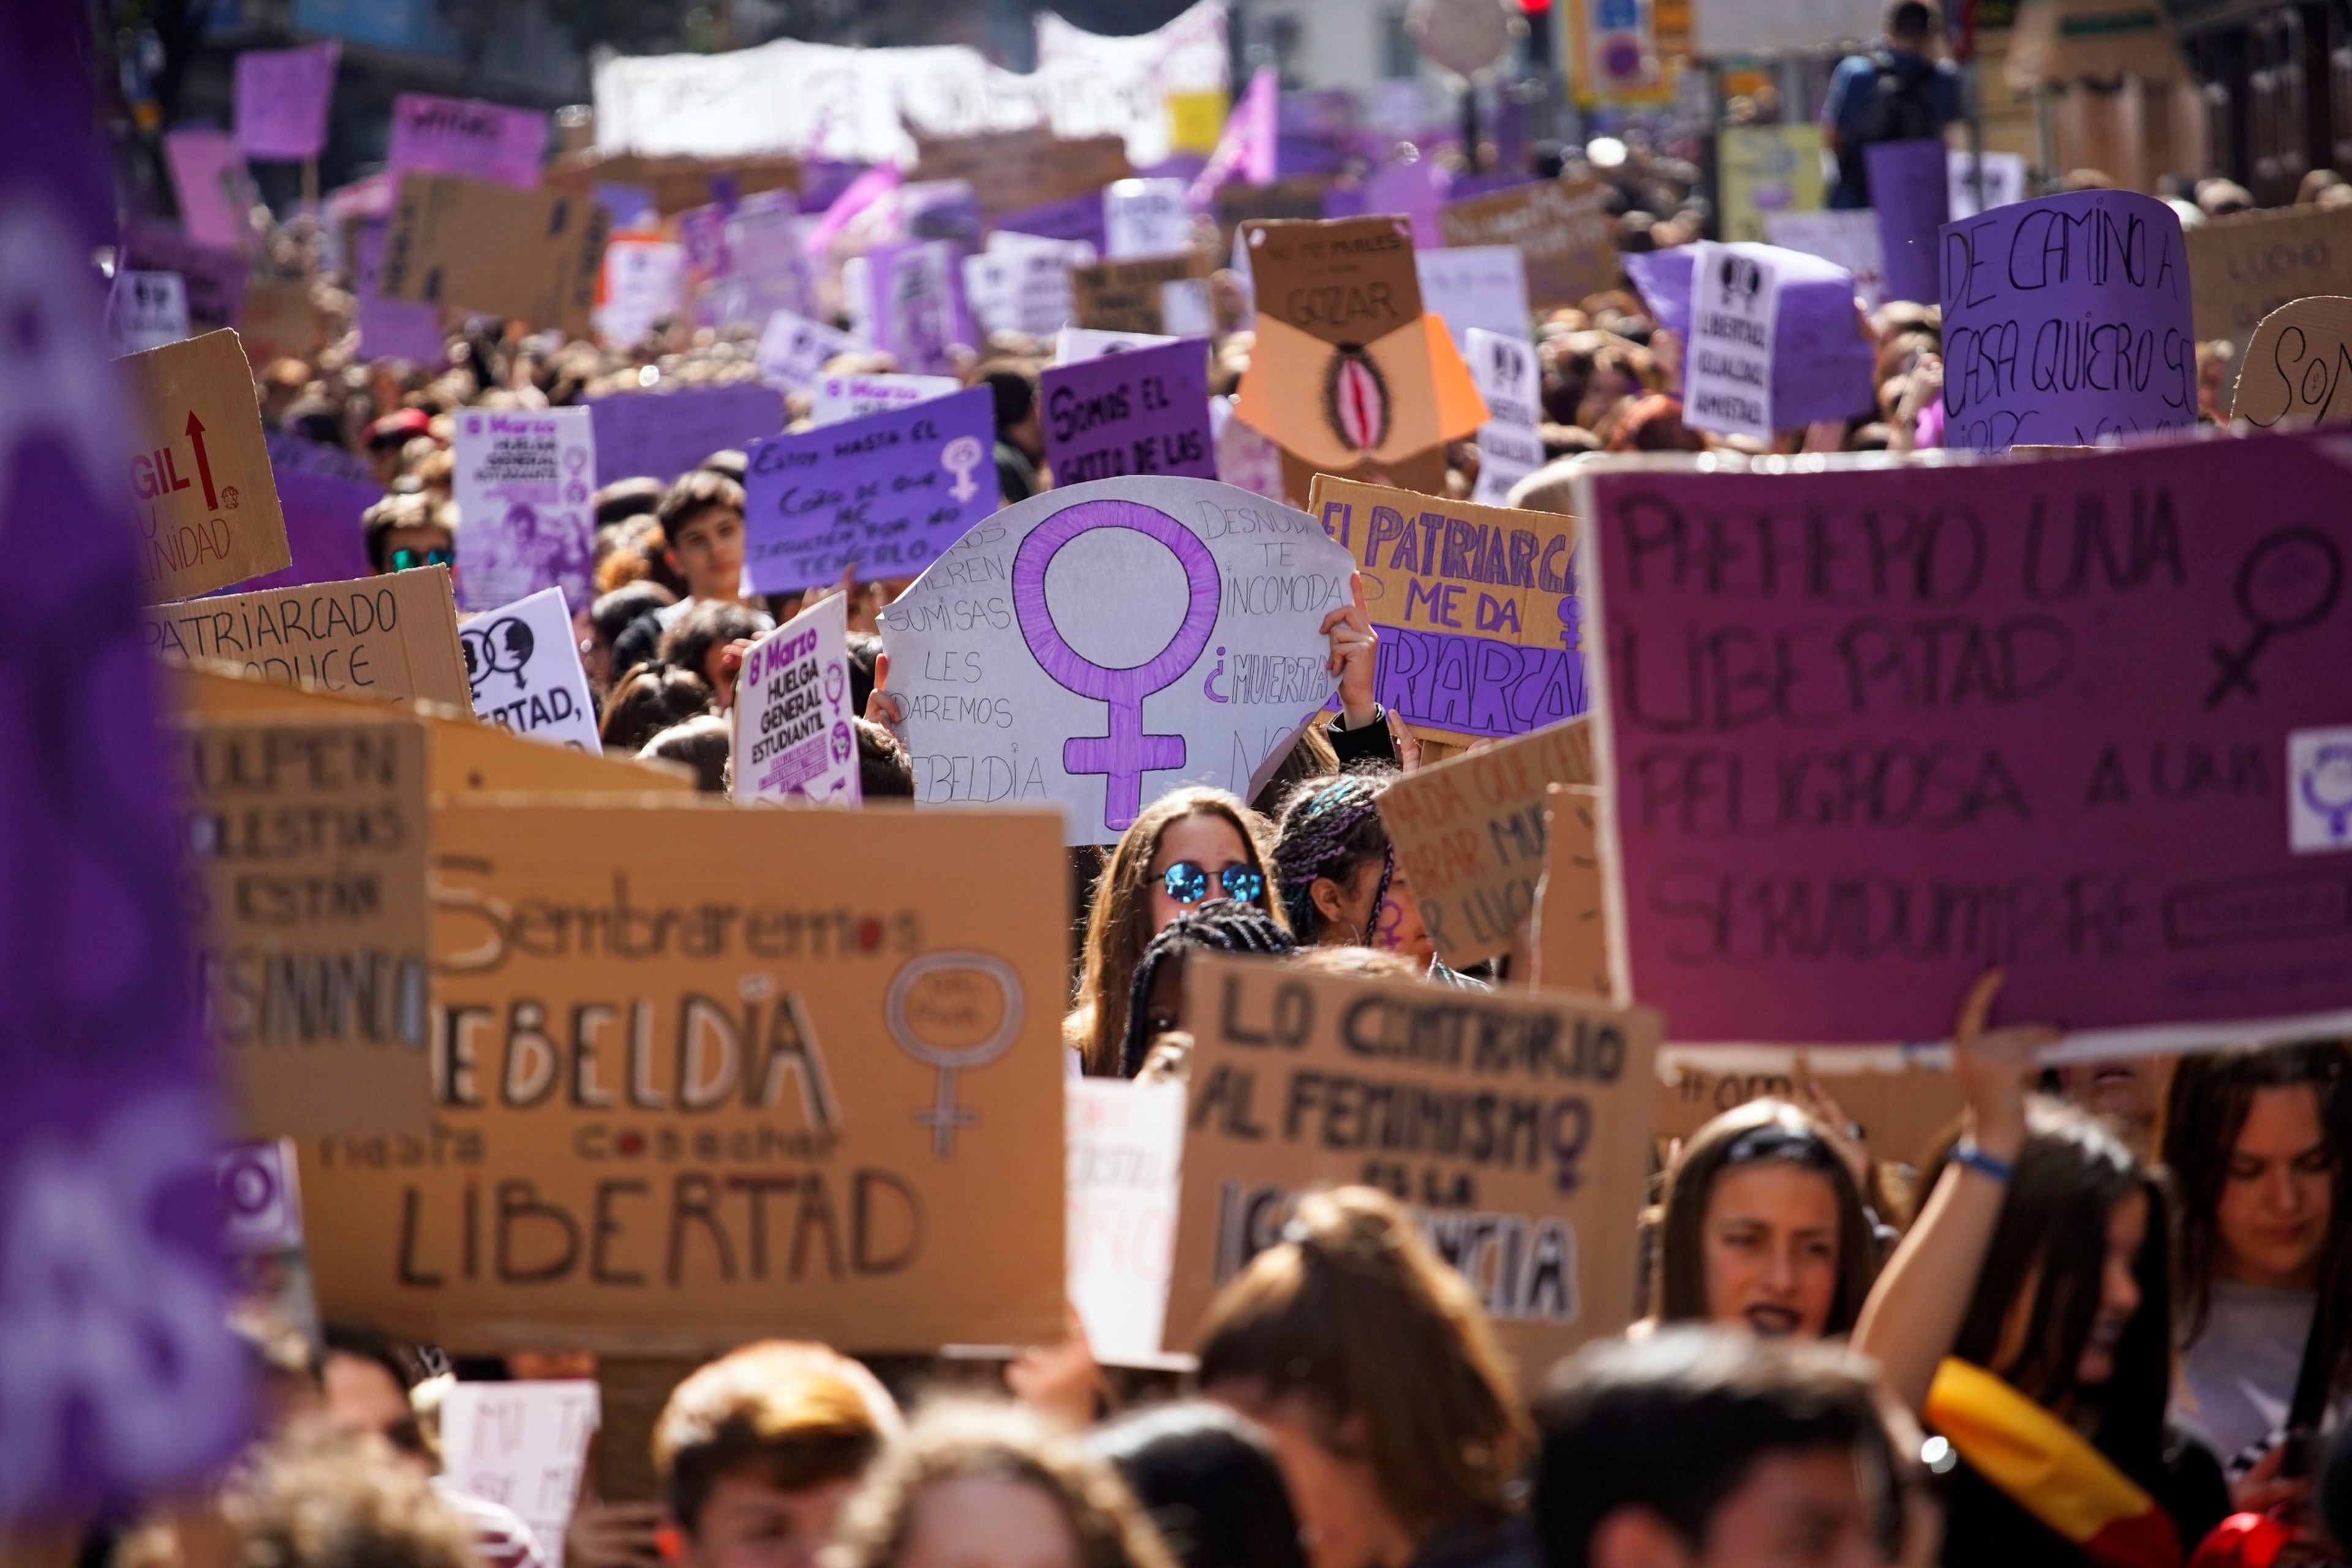 Movimientos como el "feminismo de tercera ola", según Caro, están teniendo respuesta por parte de la extrema derecha a través de esta guerra cultural.